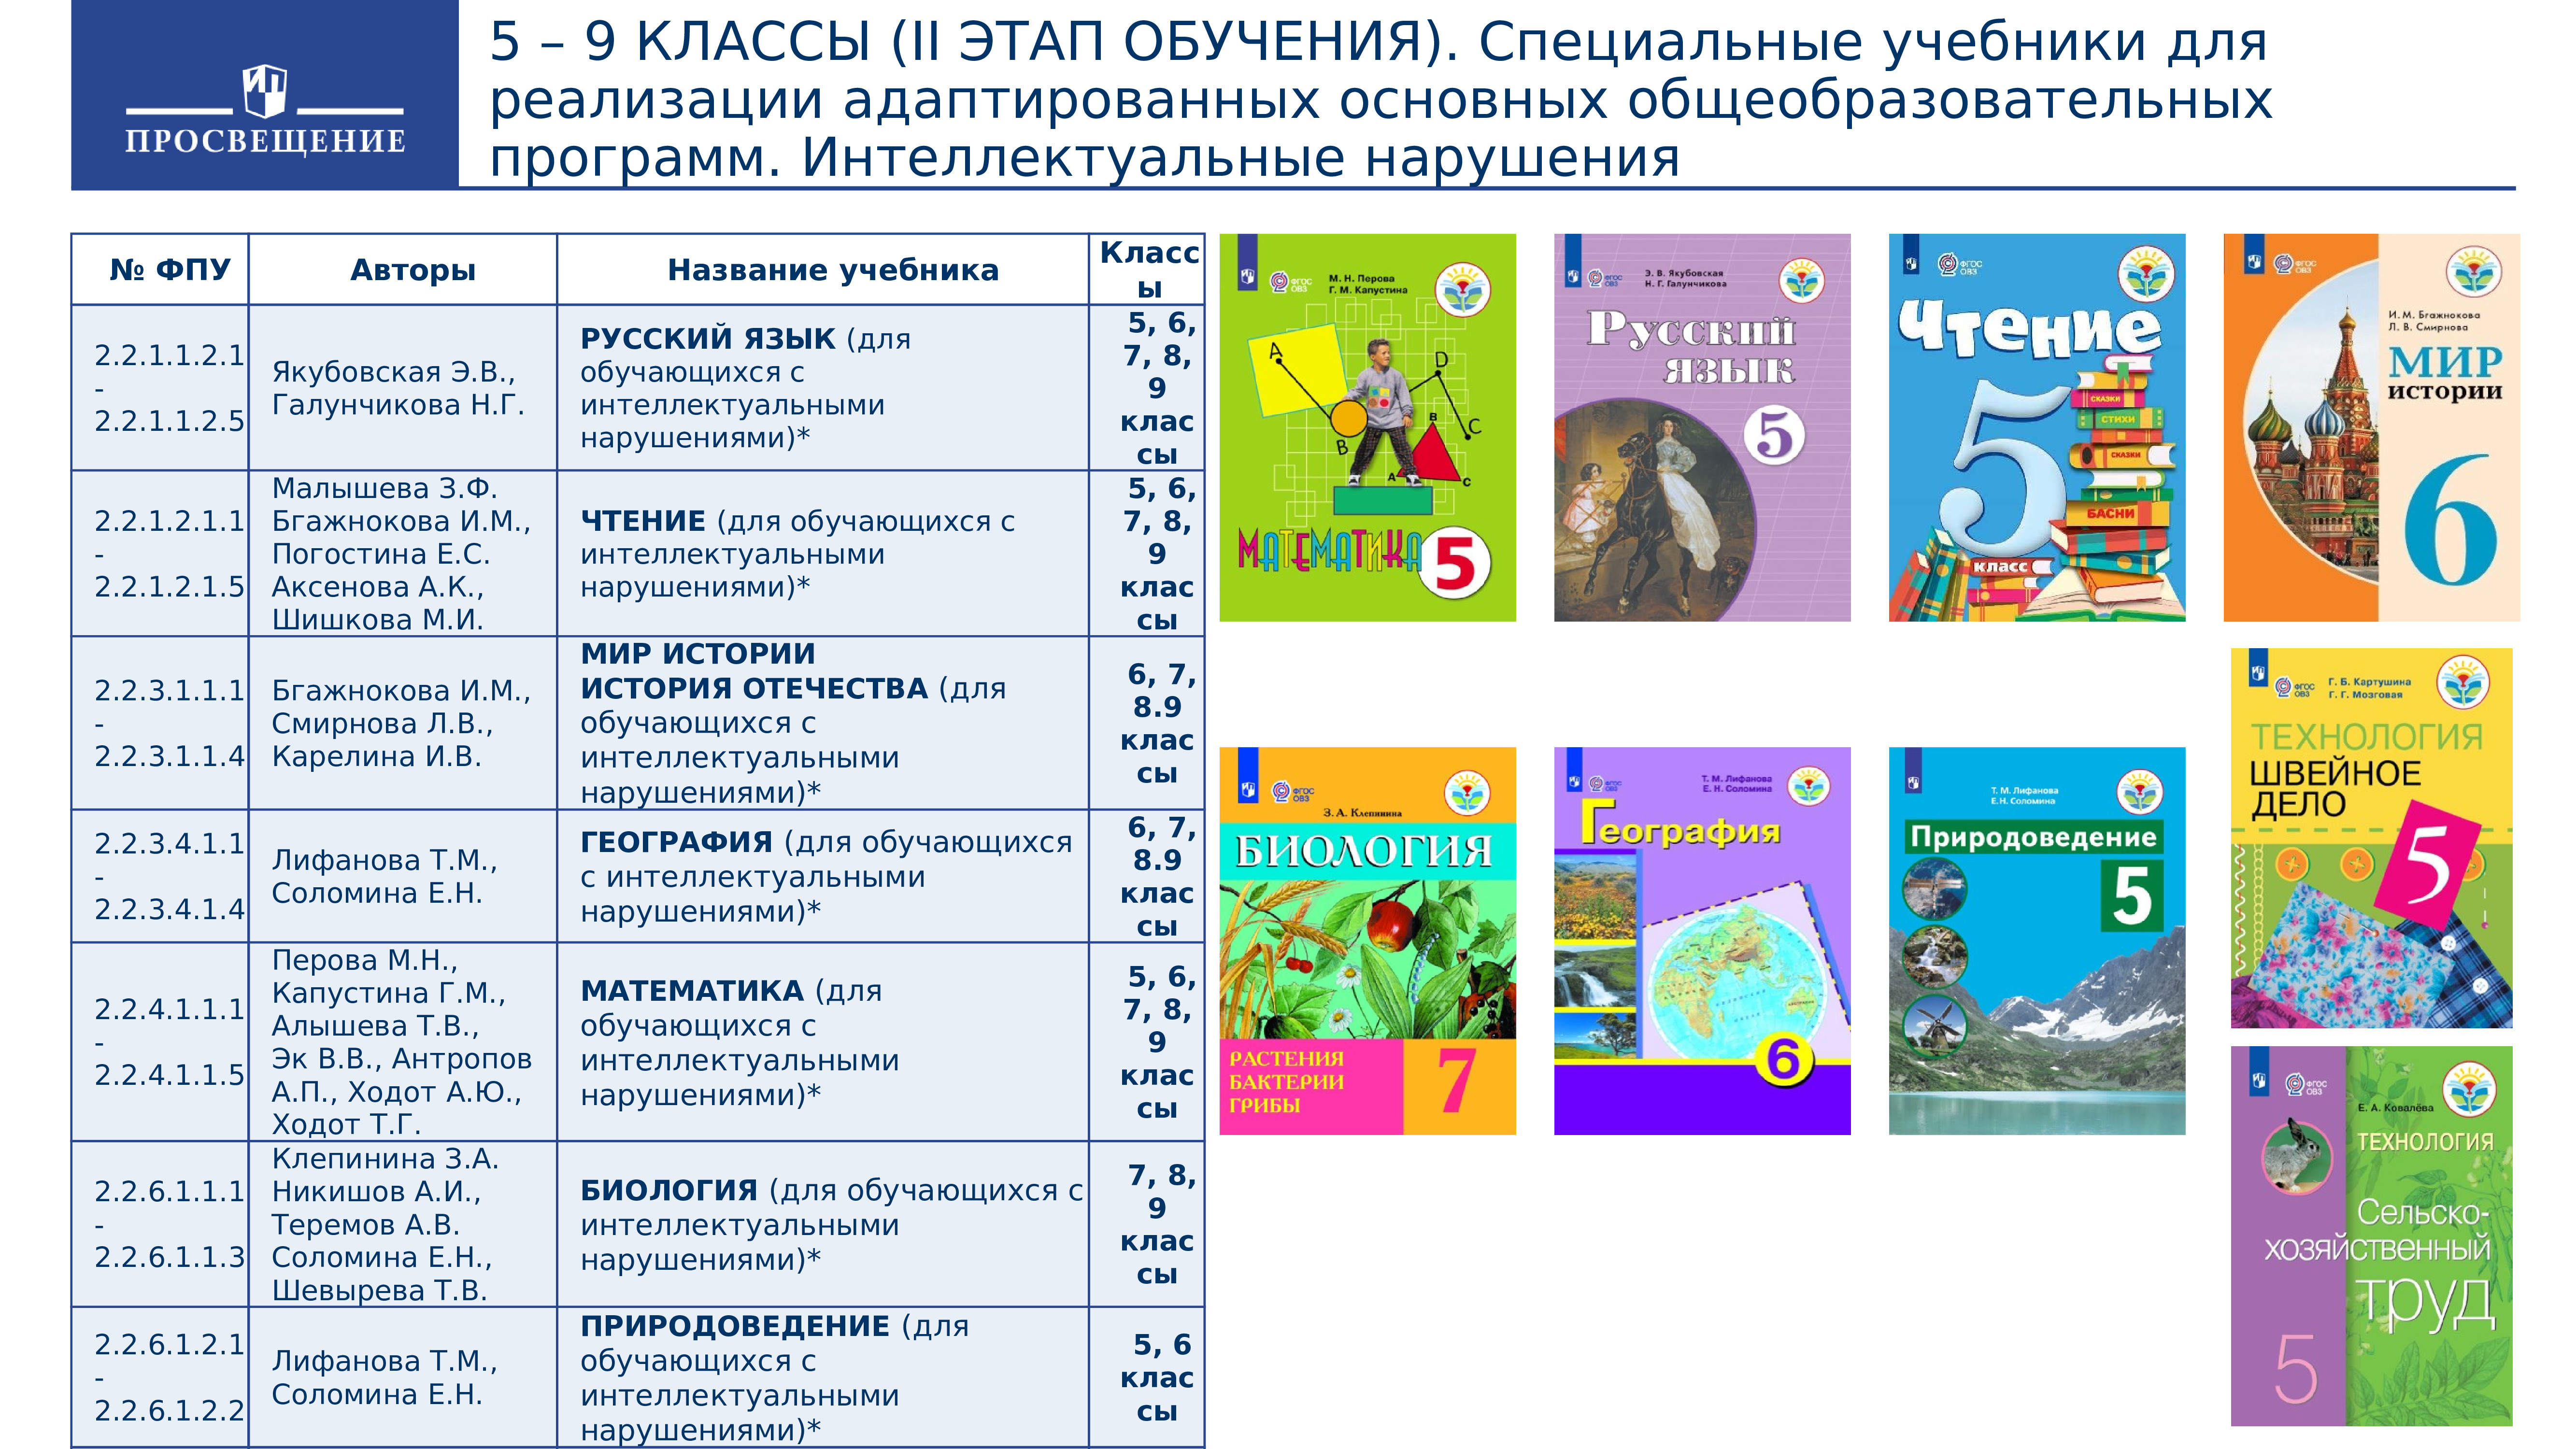 Программа школа россии русский язык 1 4